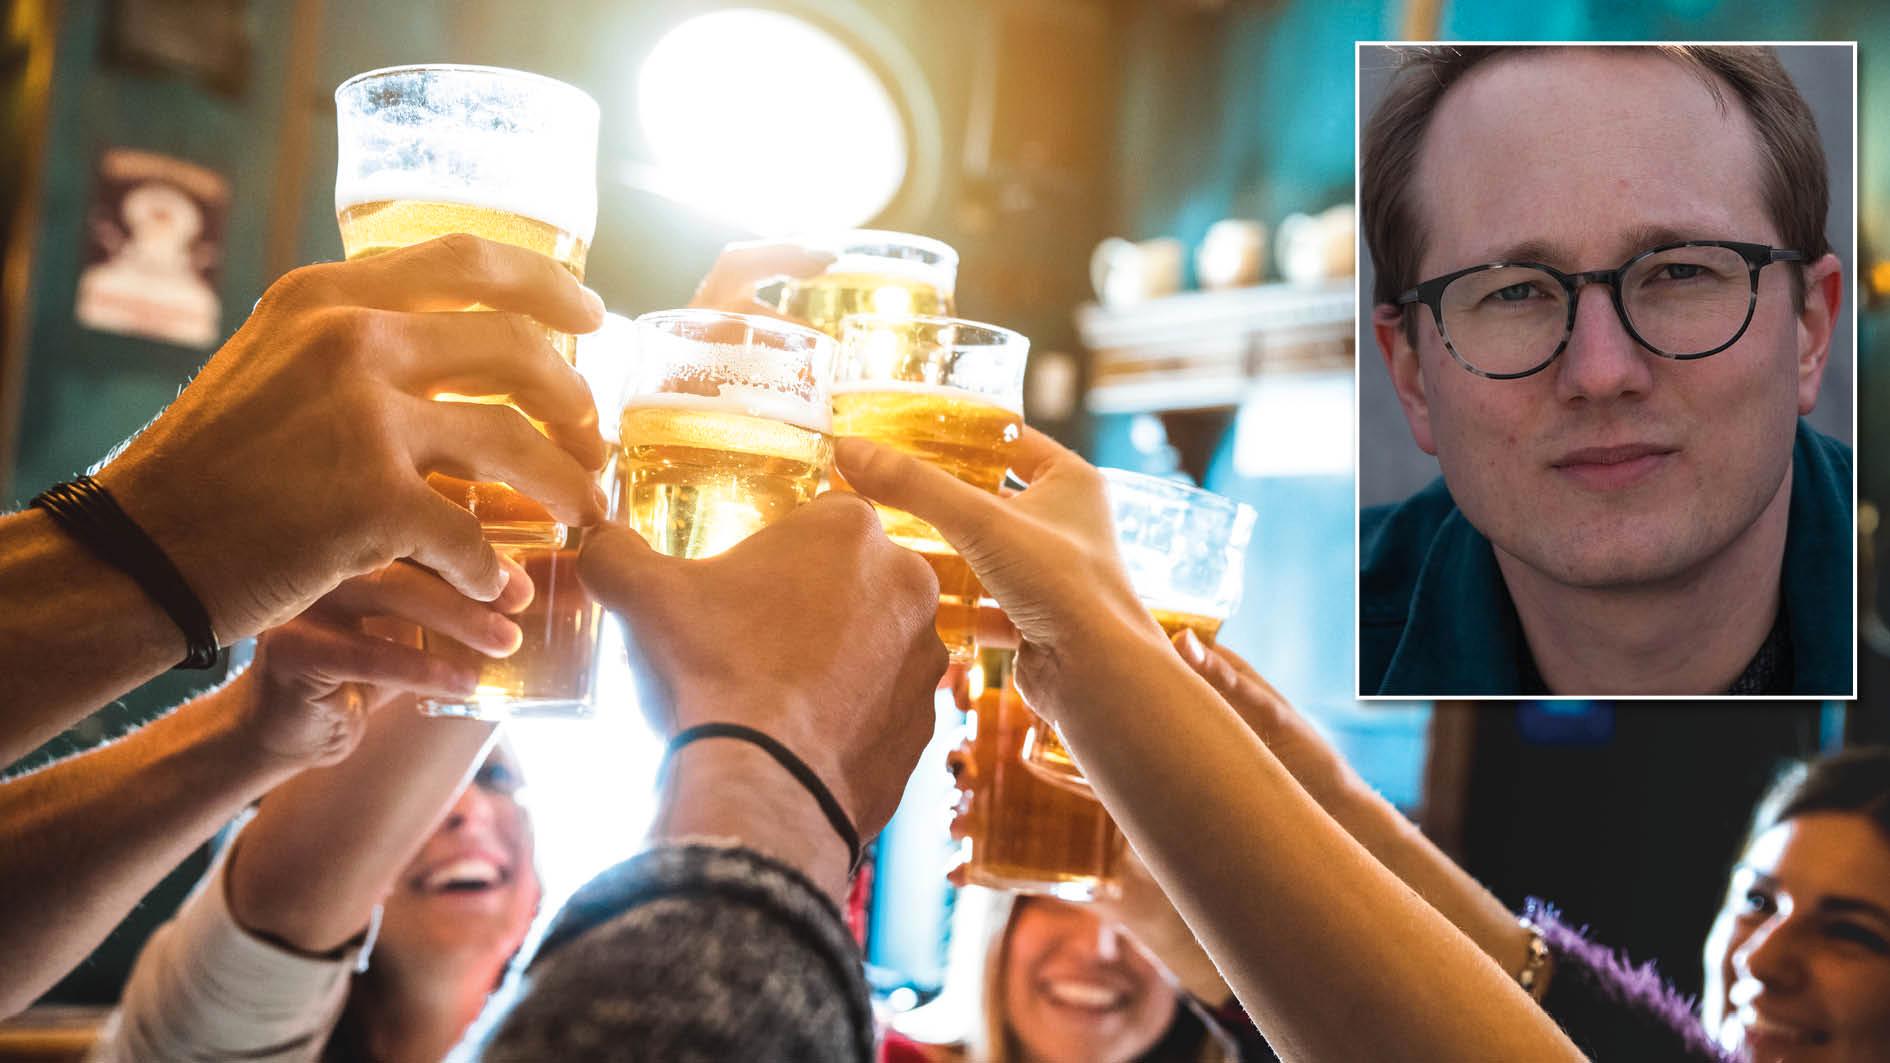 Över tre miljoner svenskar dricker så mycket att det räknas som riskbruk, enligt en ny rapport.  Det är orimligt att vi har en destruktiv alkoholkultur som normaliserar det här, skriver Lucas Nilsson från IOGT-NTO.